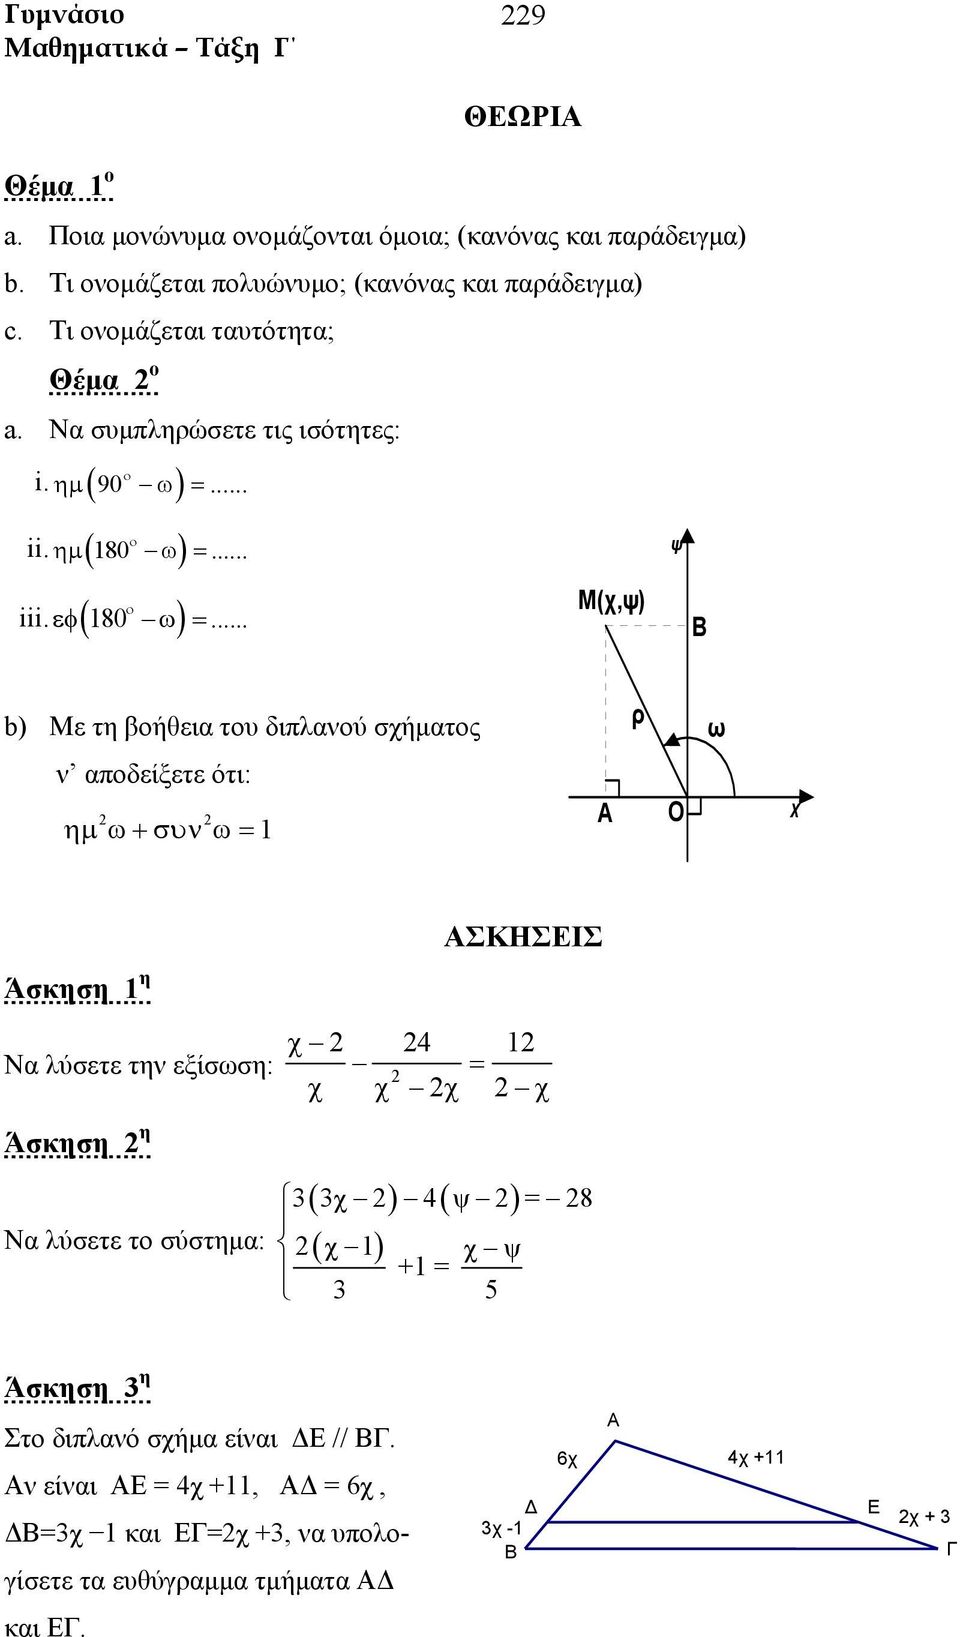 .. ψ Μ(χ,ψ) Β b) Με τη βοήθεια του διπλανού σχήματος ρ ω ν αποδείξετε ότι: ημ ω + συν ω = 1 Α Ο χ χ 4 1 Να λύσετε την εξίσωση: = χ χ χ χ Άσκηση η Να λύσετε